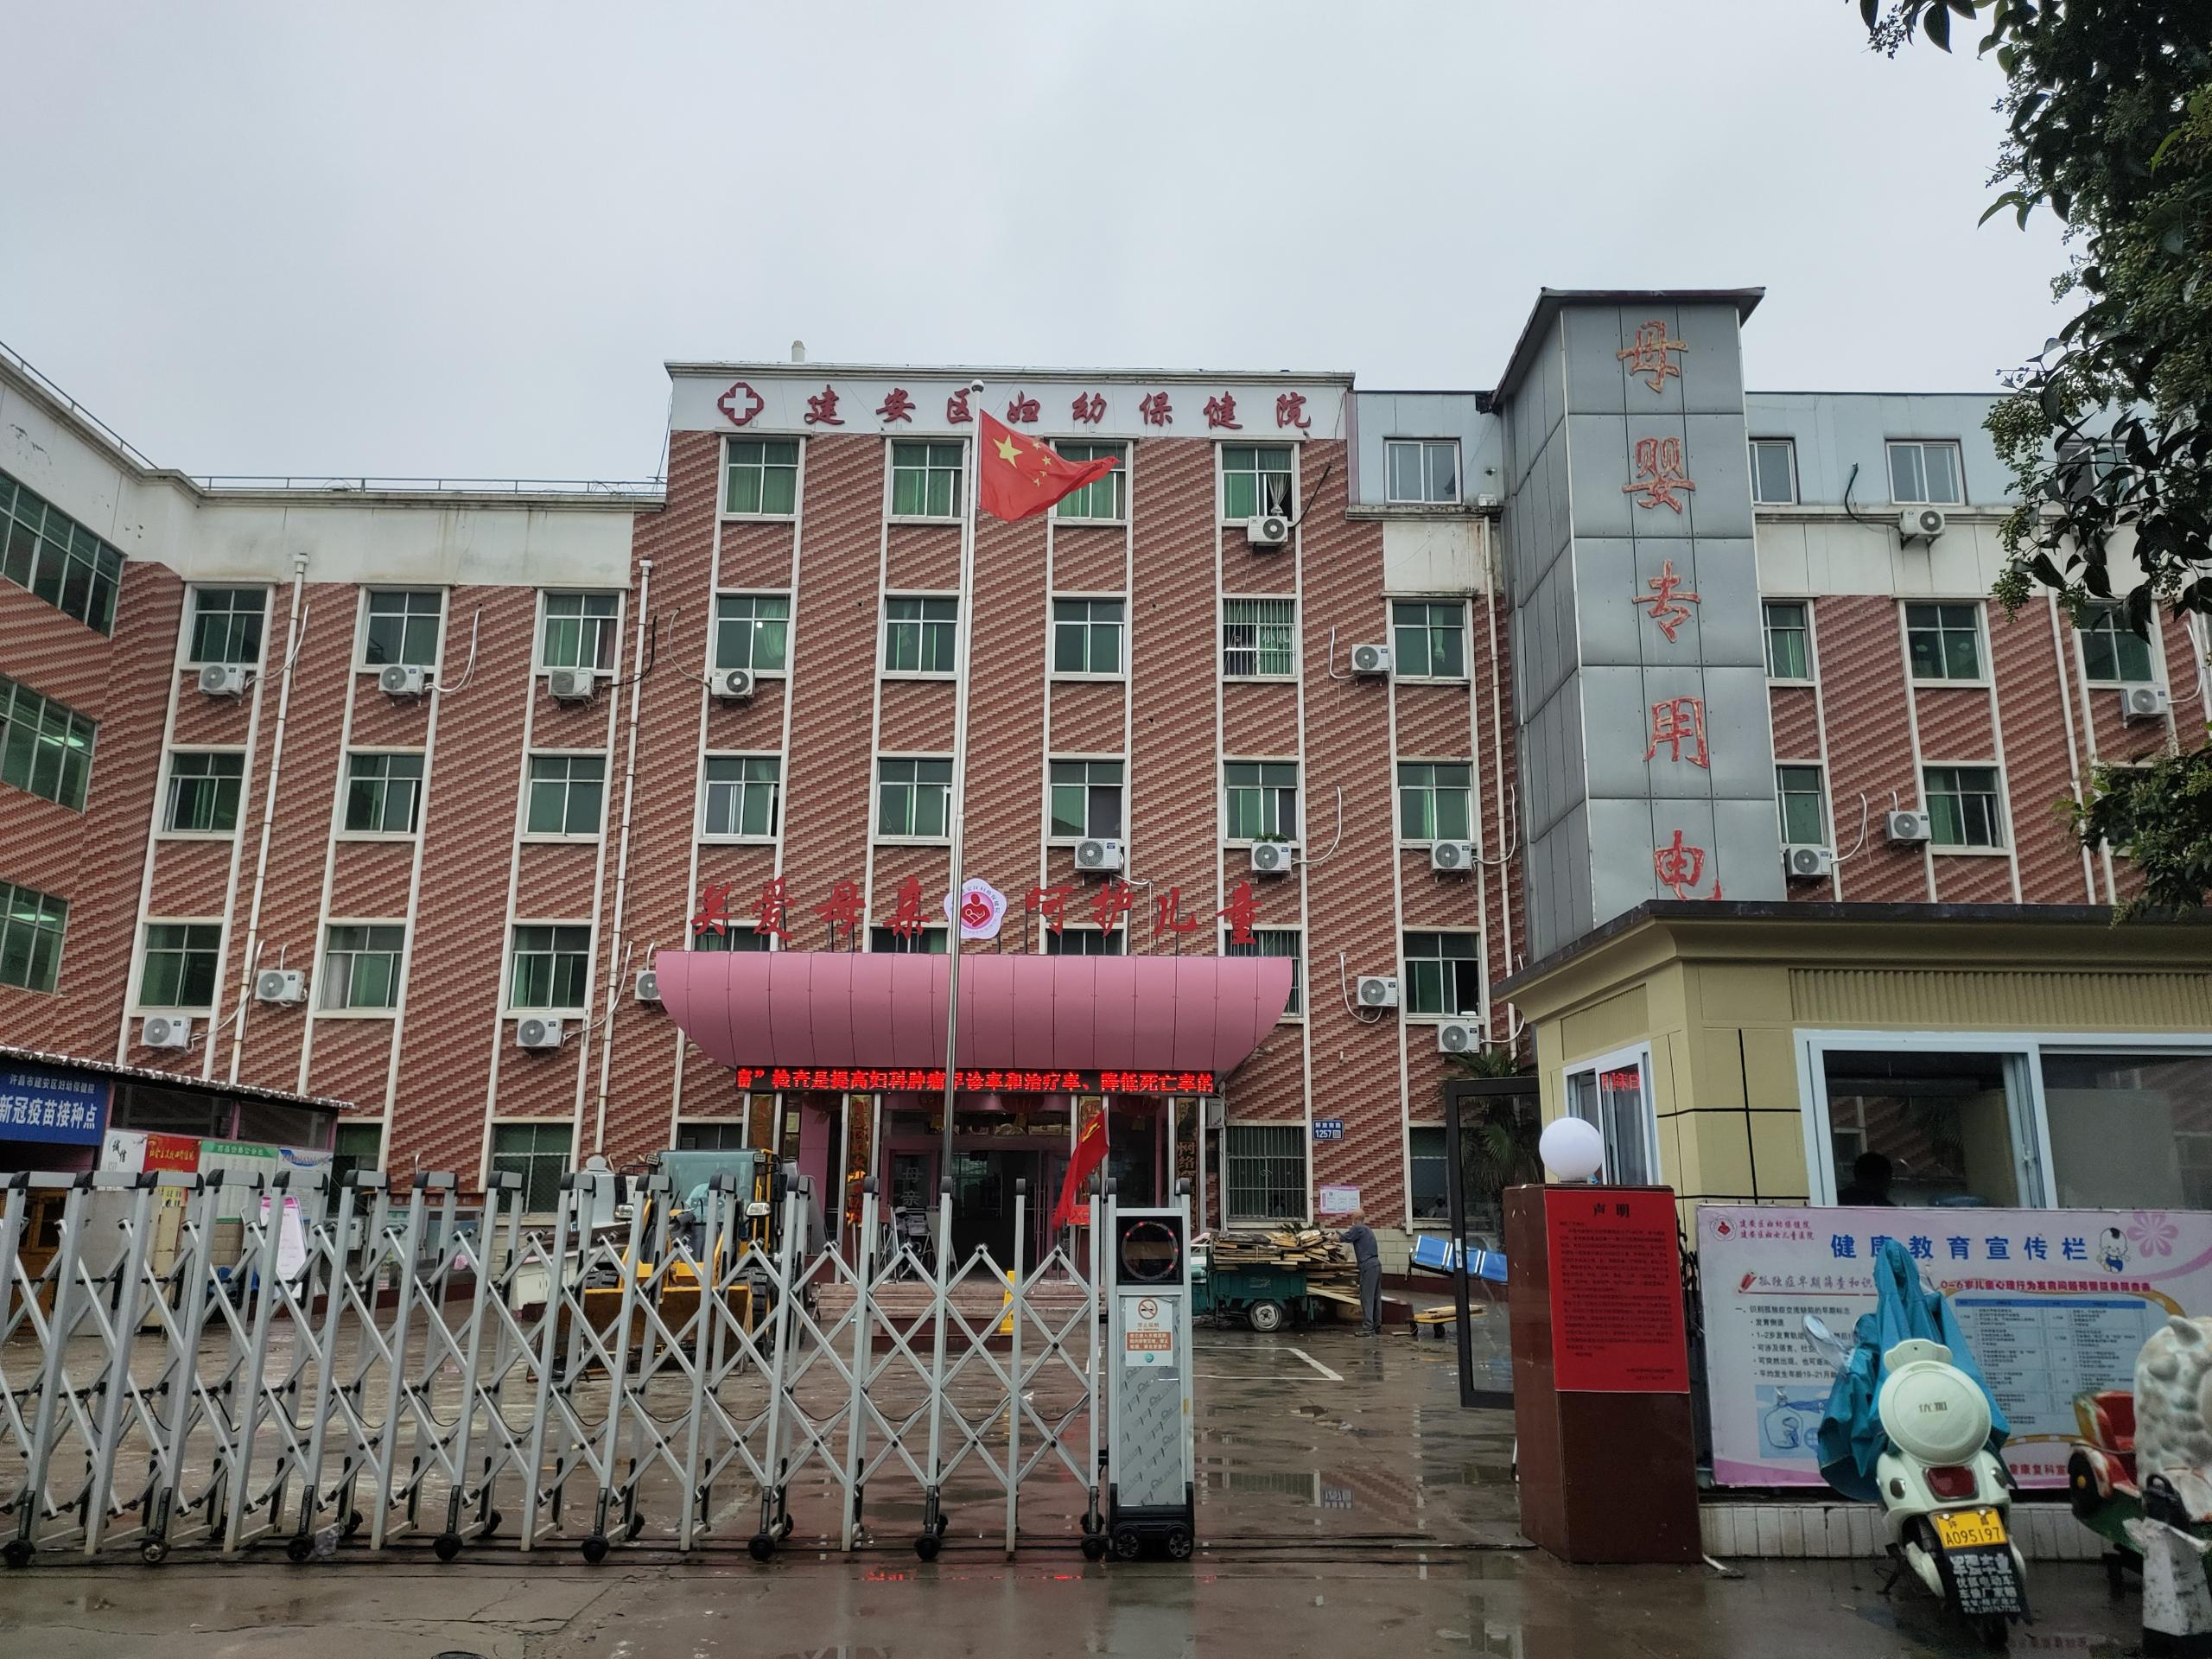 [案例]超声母乳成分分析仪厂家在河南许昌市建安区妇幼保健院安装培训完成9.18